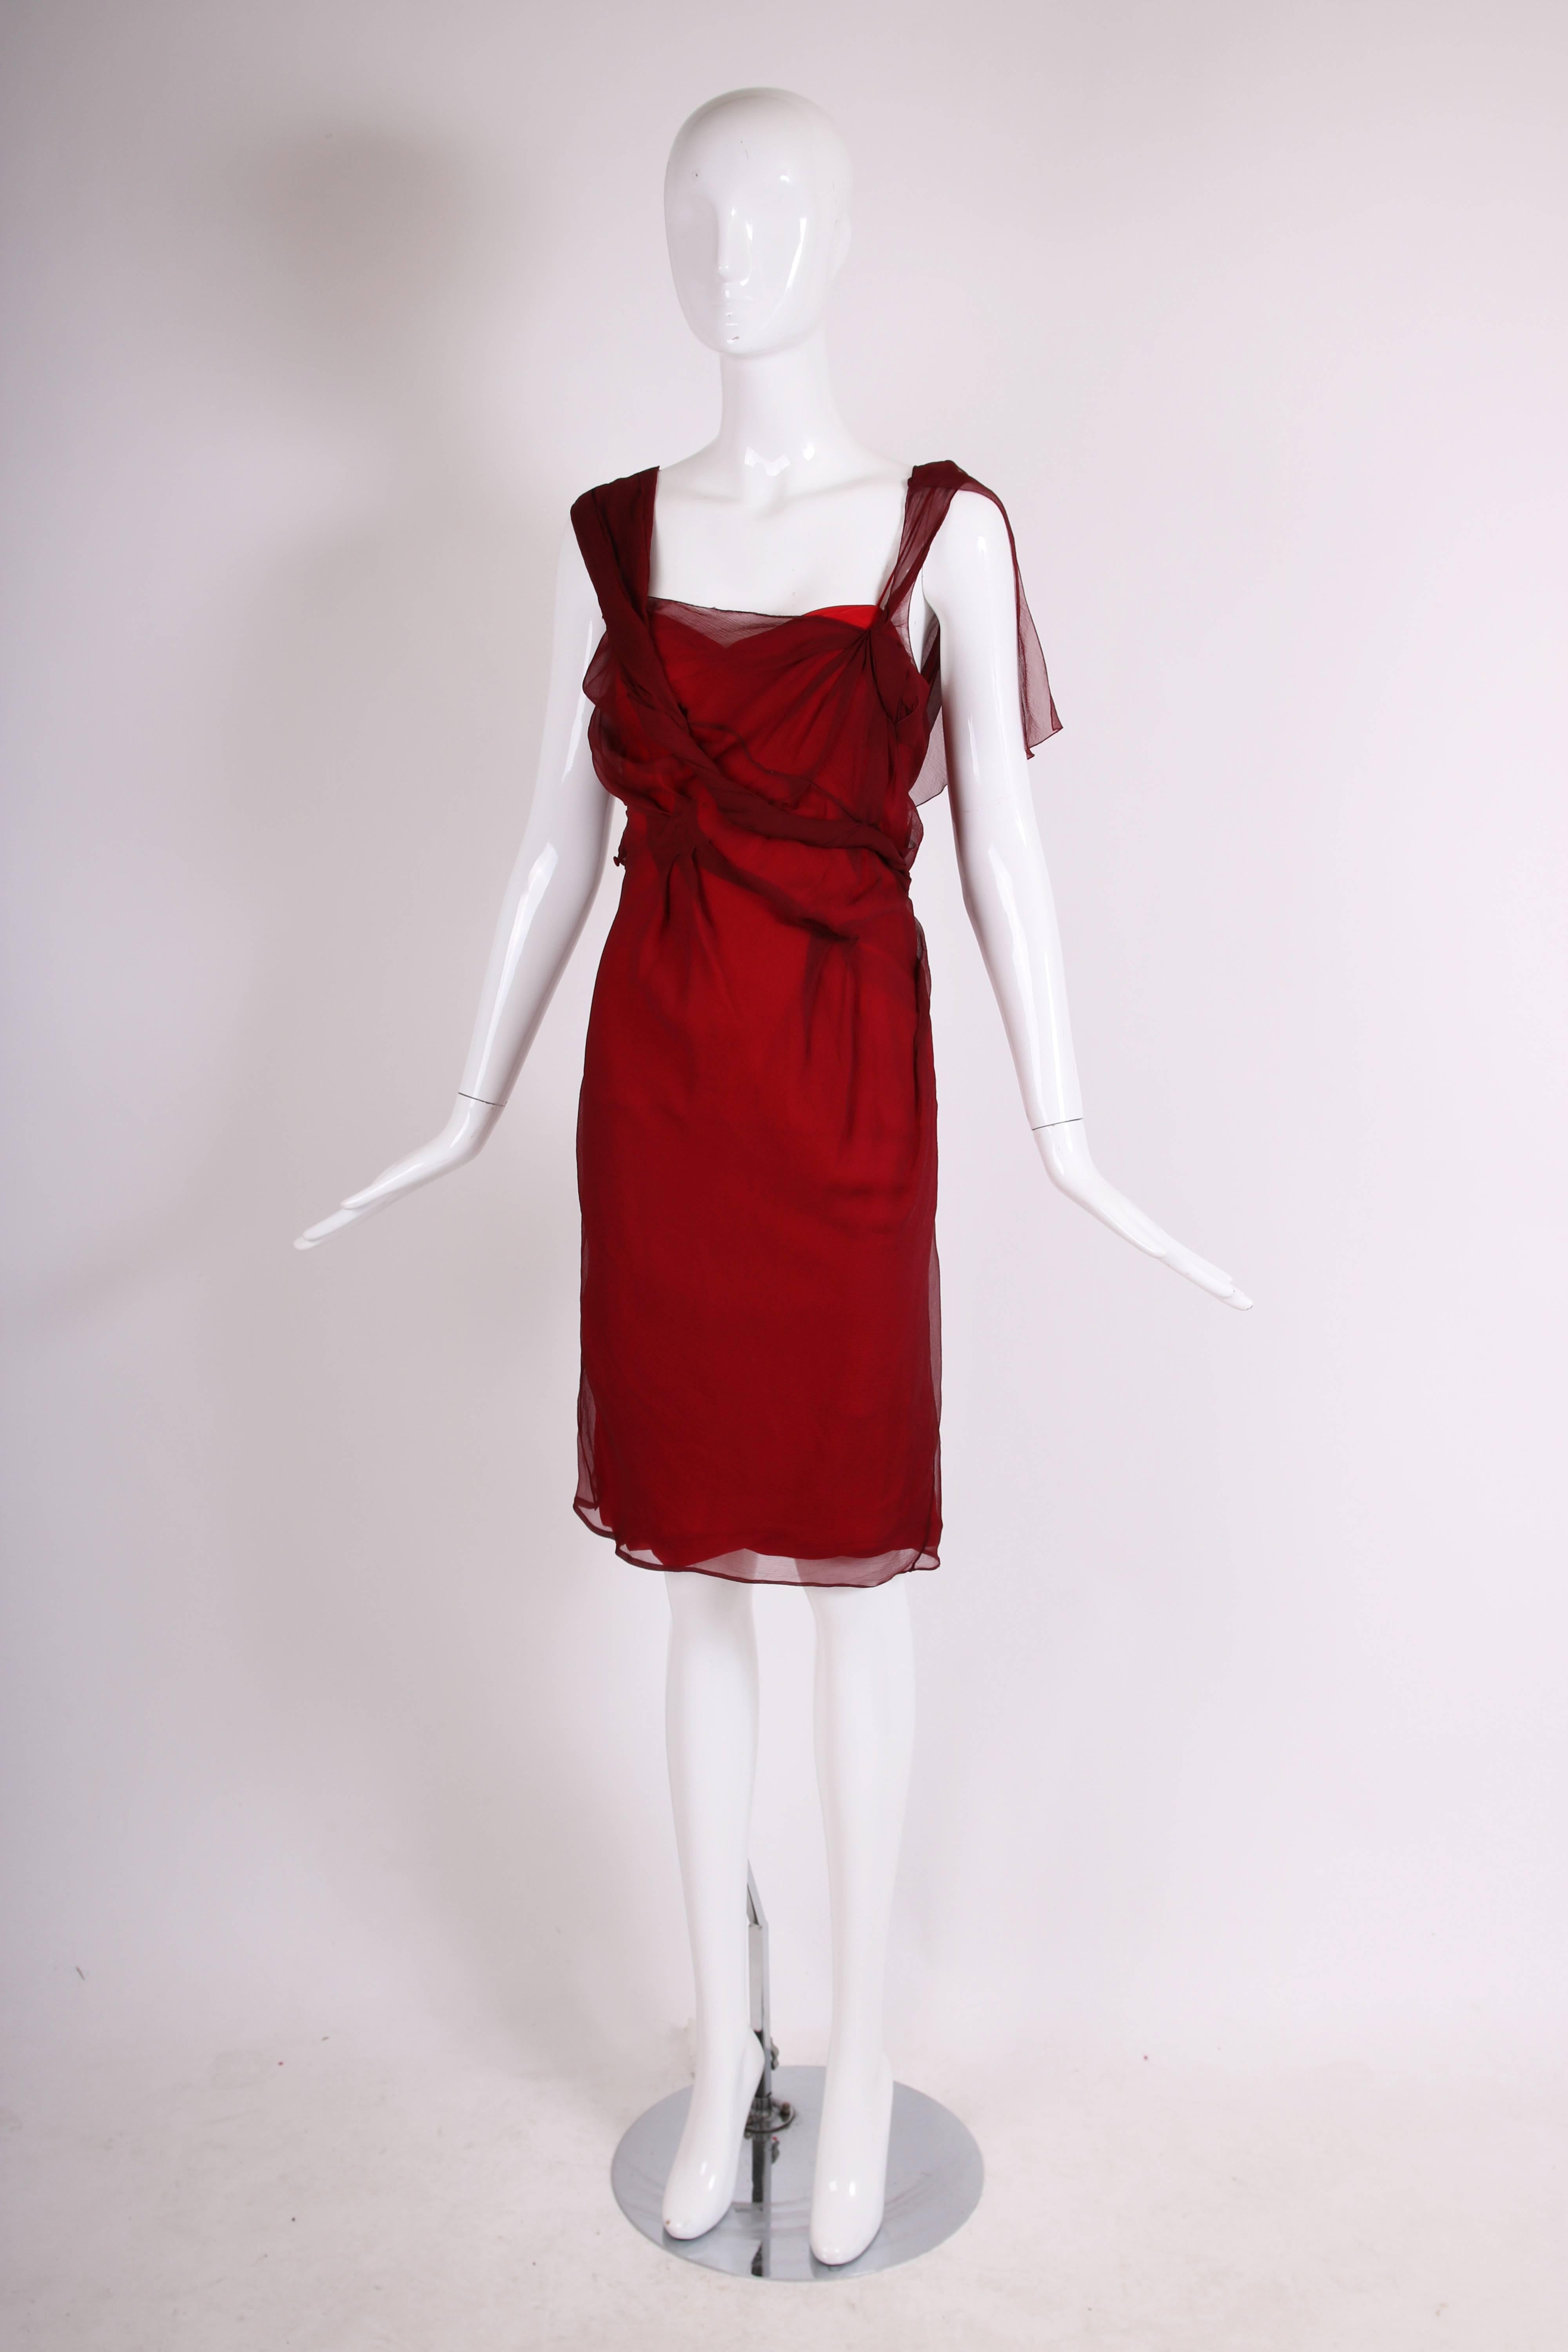 Robe de cocktail à double épaisseur en mousseline de soie bordeaux Christian Dior by John Galliano avec motif asymétrique sur la couche supérieure. En excellent état - pas d'étiquette de taille, veuillez consulter les mesures. 
MESURES :
Poitrine :